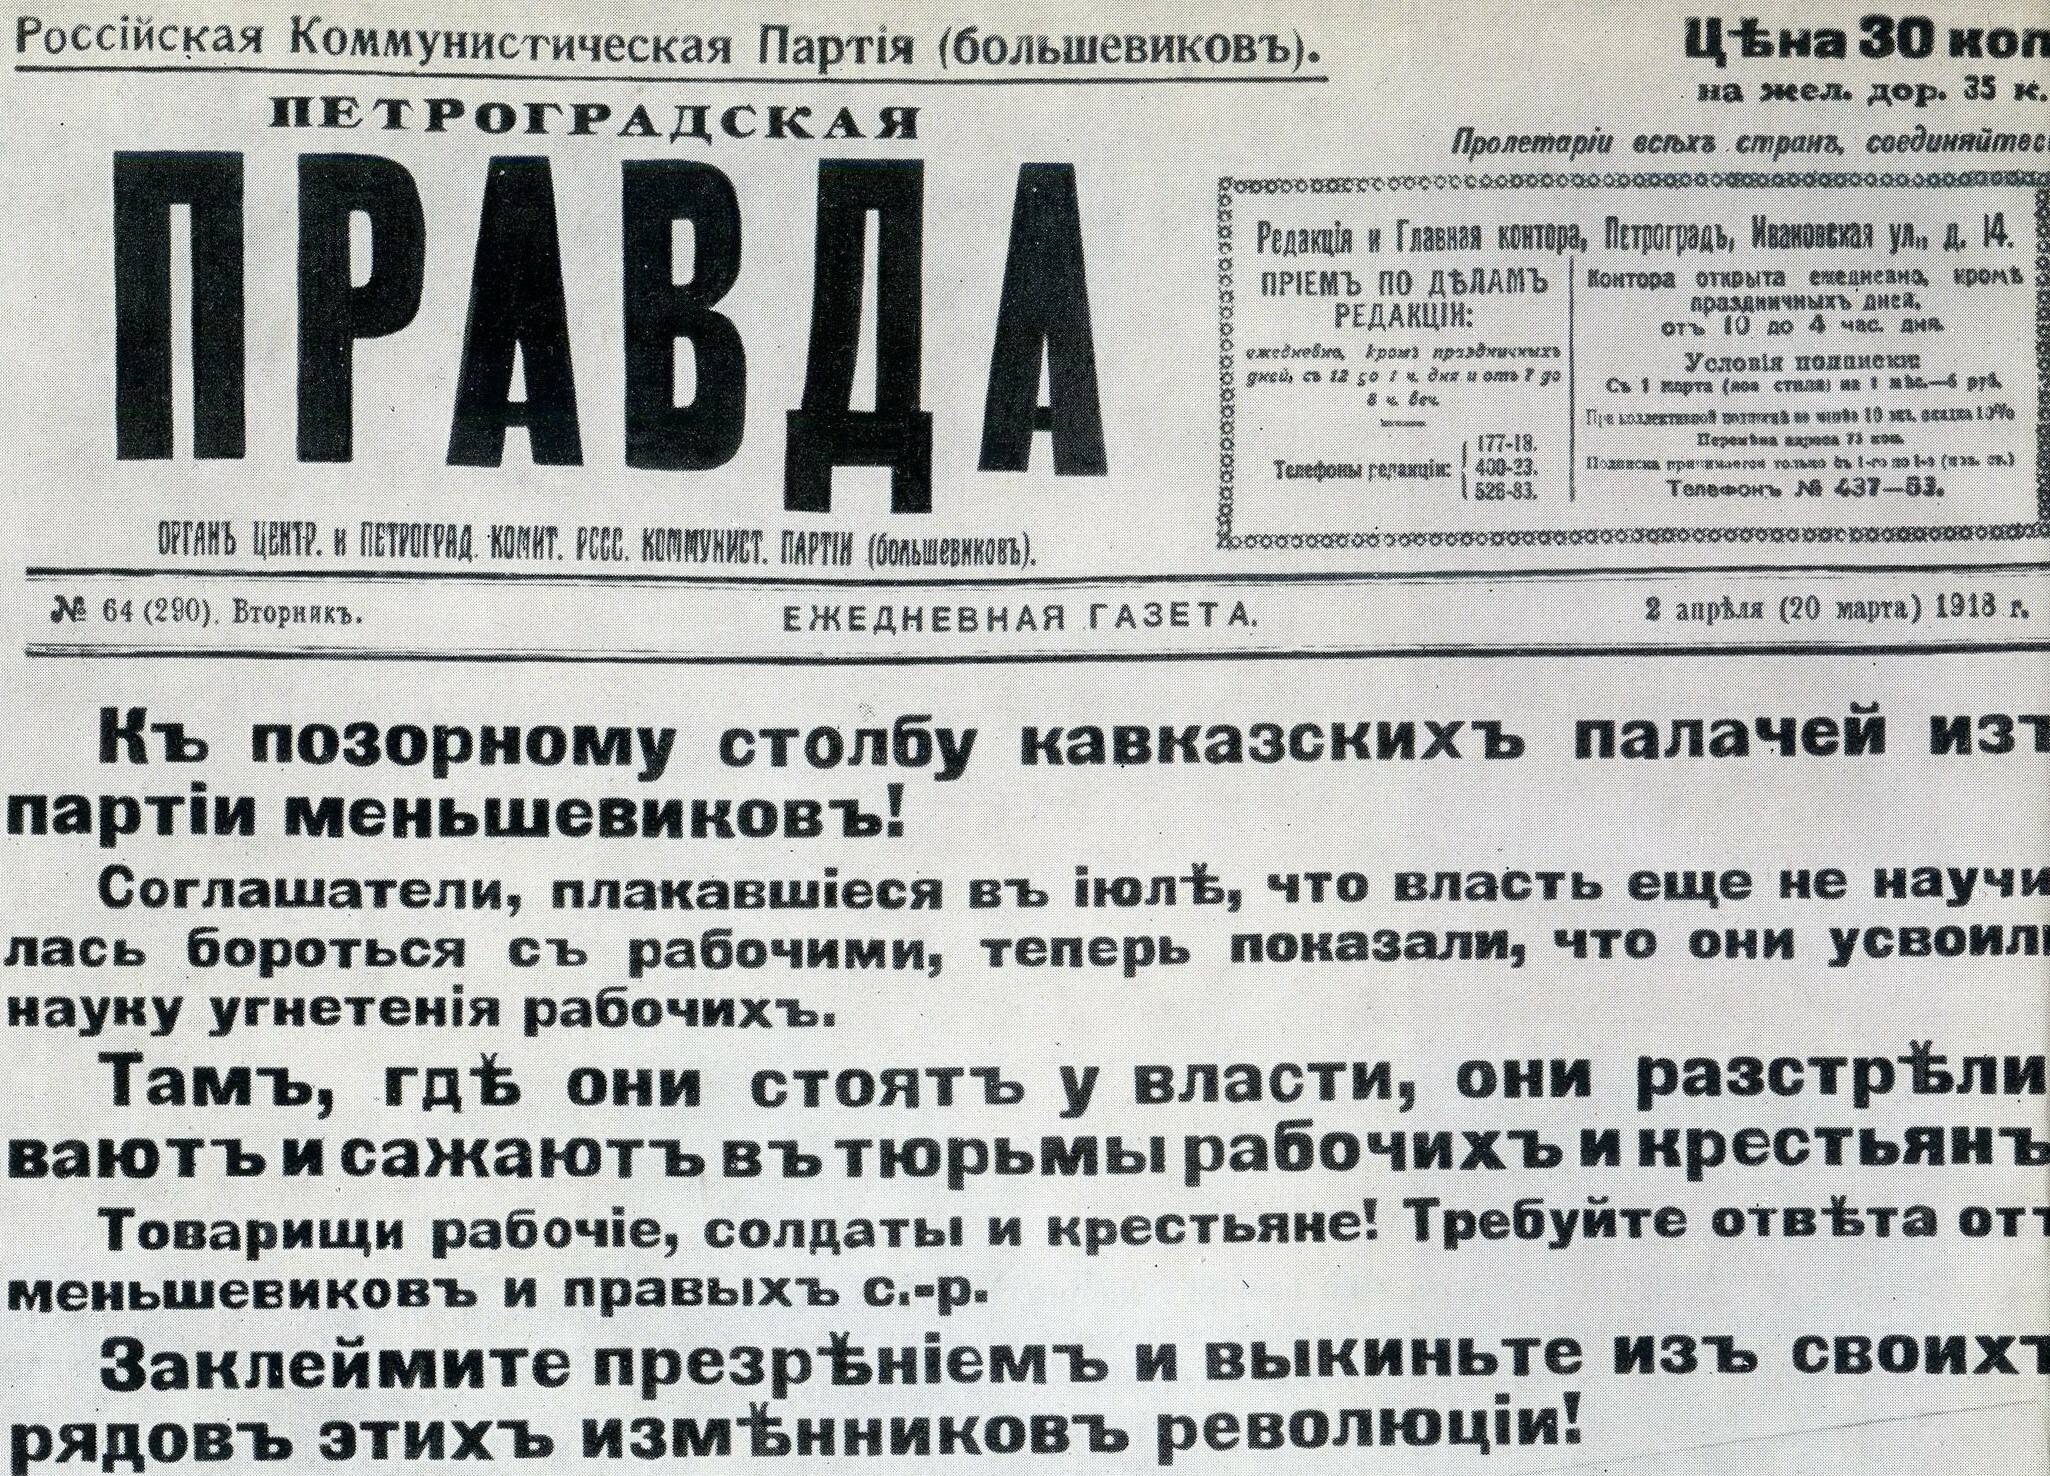 Скан части первой страницы газеты «Петроградская правда» 1918 года, №64.